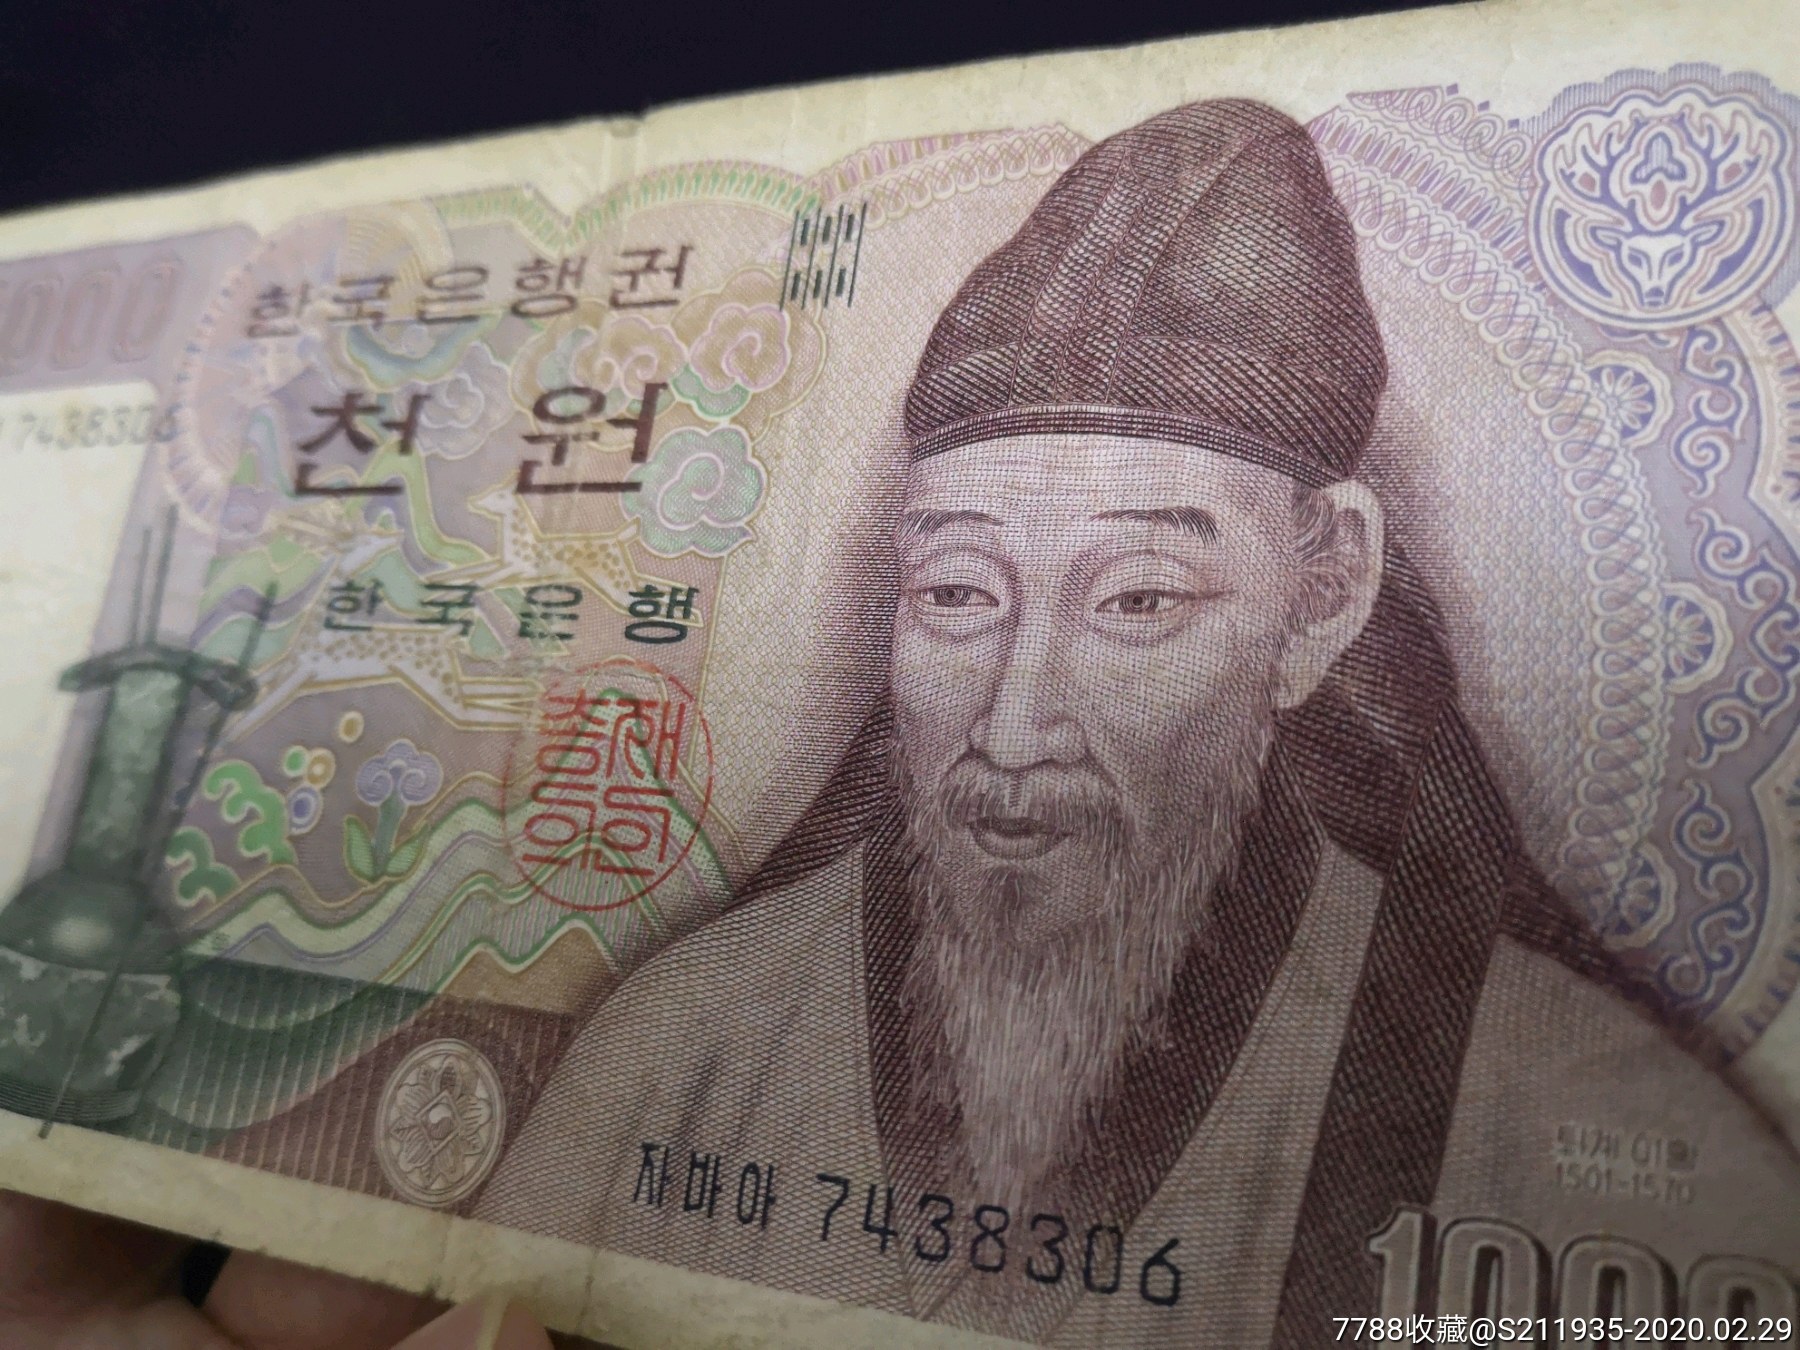 老版韩币一千元,80年代老韩元,少见了,包老保真